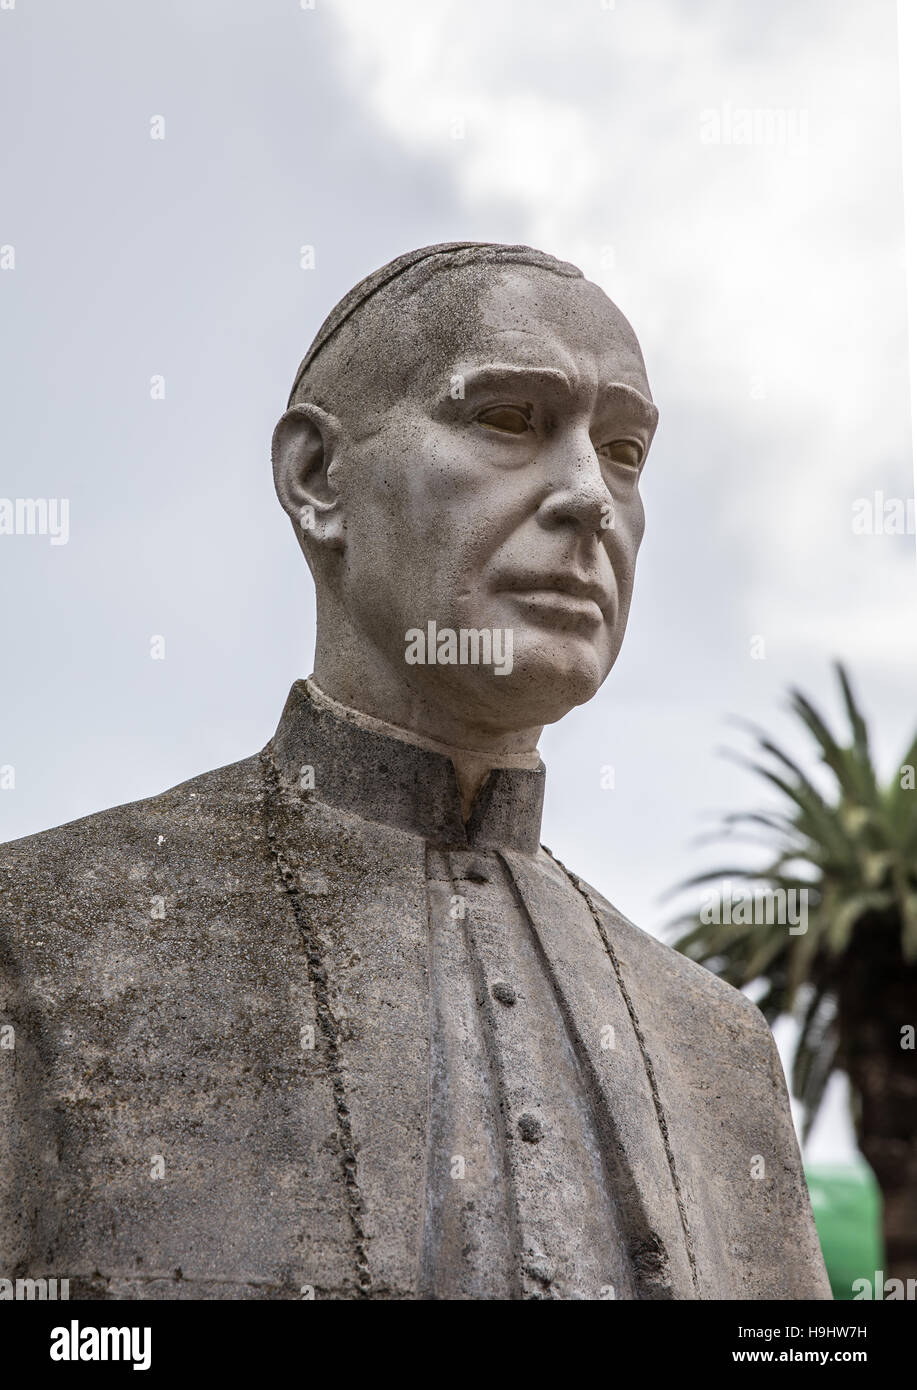 Statue of bishop Domingo Perez Caceres Stock Photo